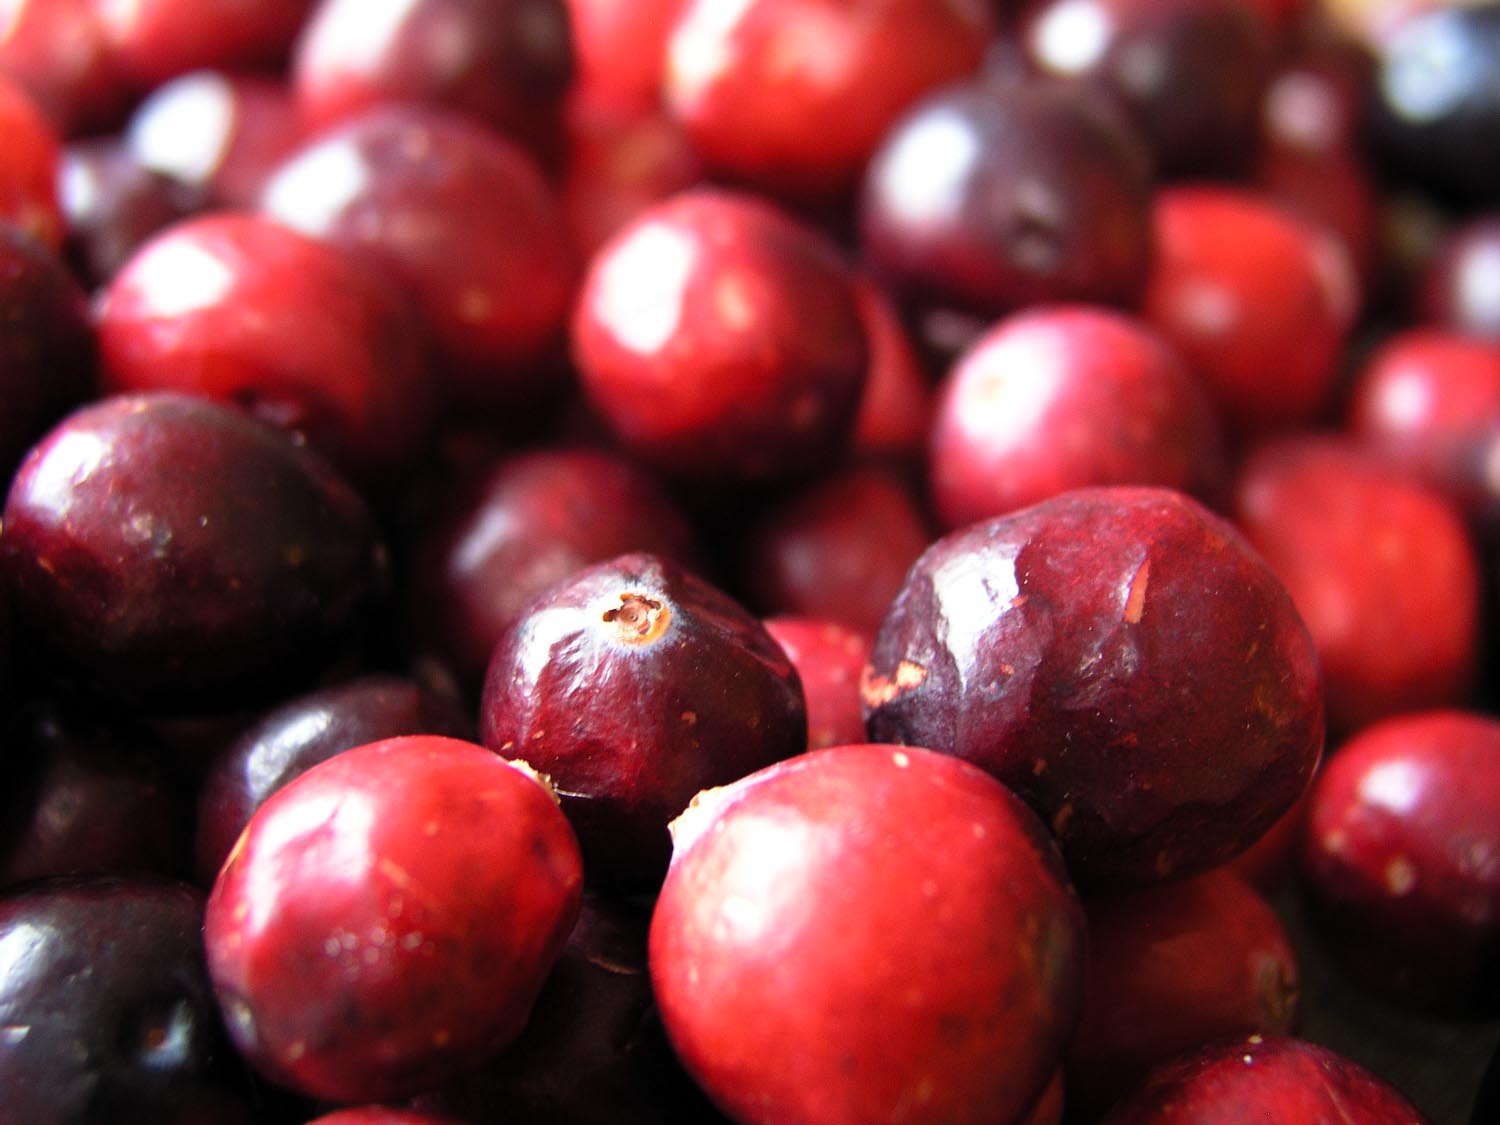 Rosa-Dip Meerrettich-Cranberry Auf dem Bild sind in Großaufnahme rote, reife Granberrys zu sehen.